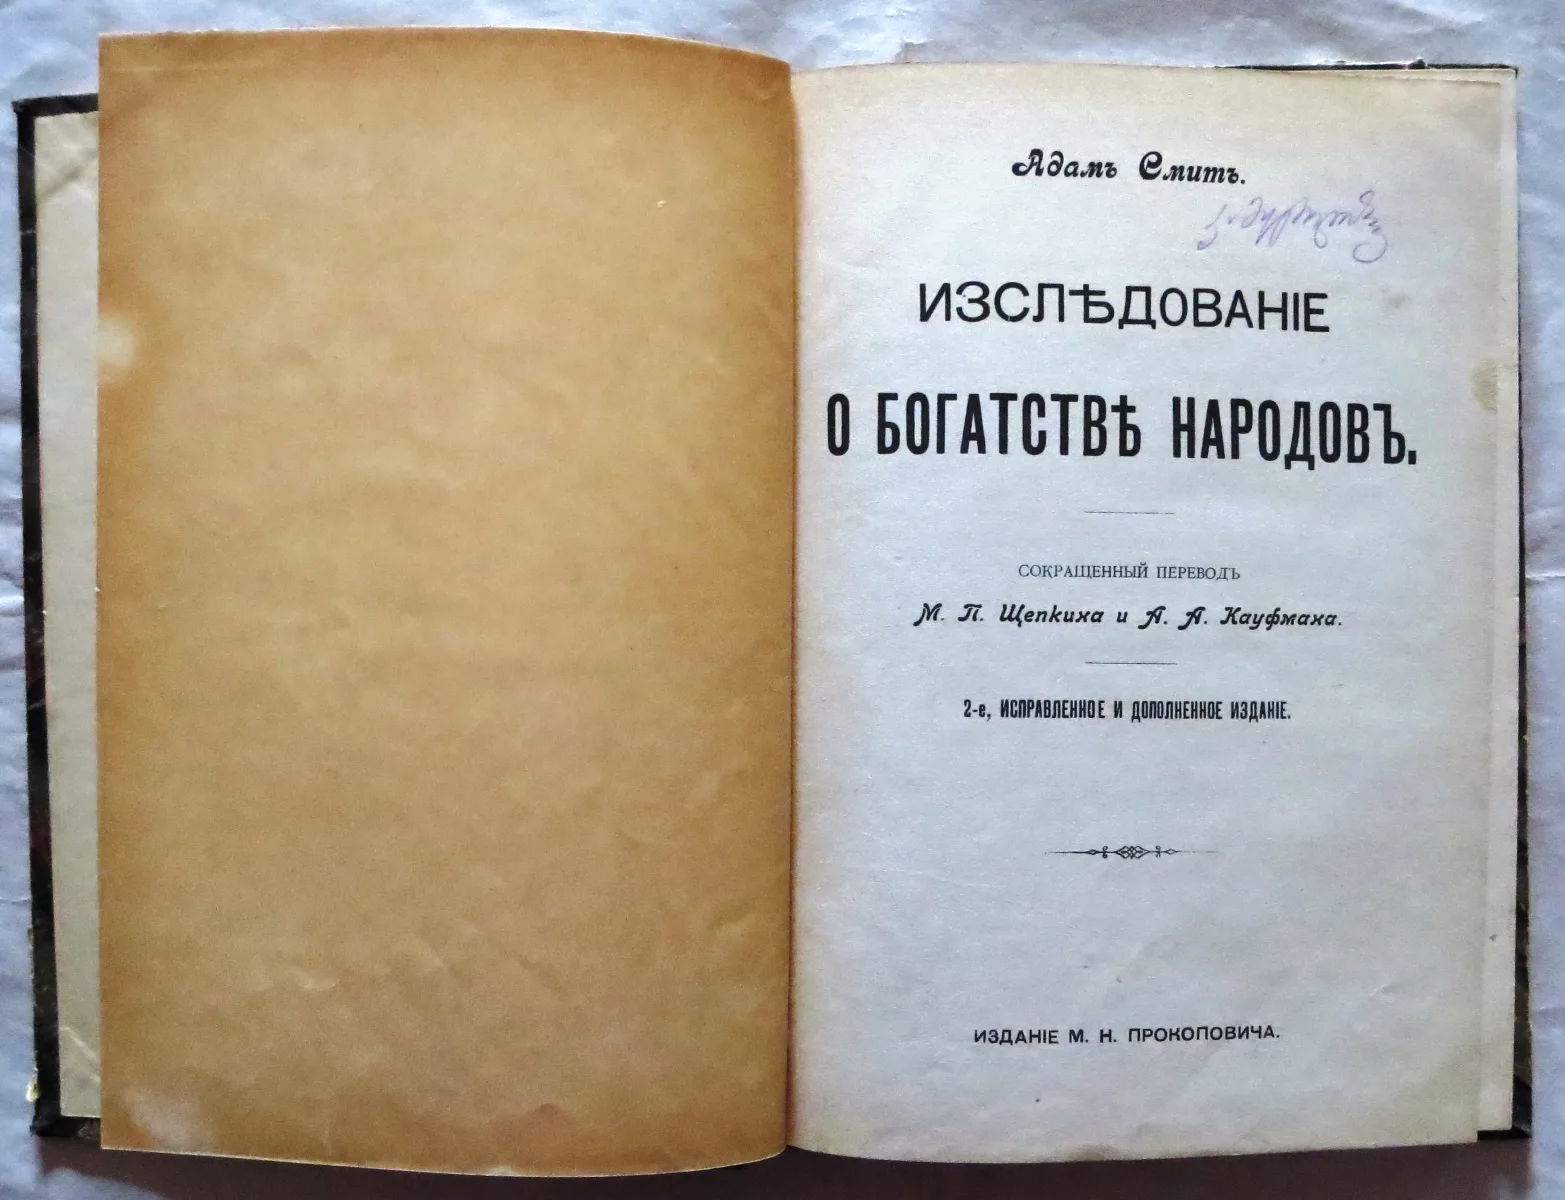 Знаменитая книга Адама Смита была переведена на множество языков, в том числе и на русский, и пользовалась большой популярностью у наших соотечественников (о чем писал Пушкин).